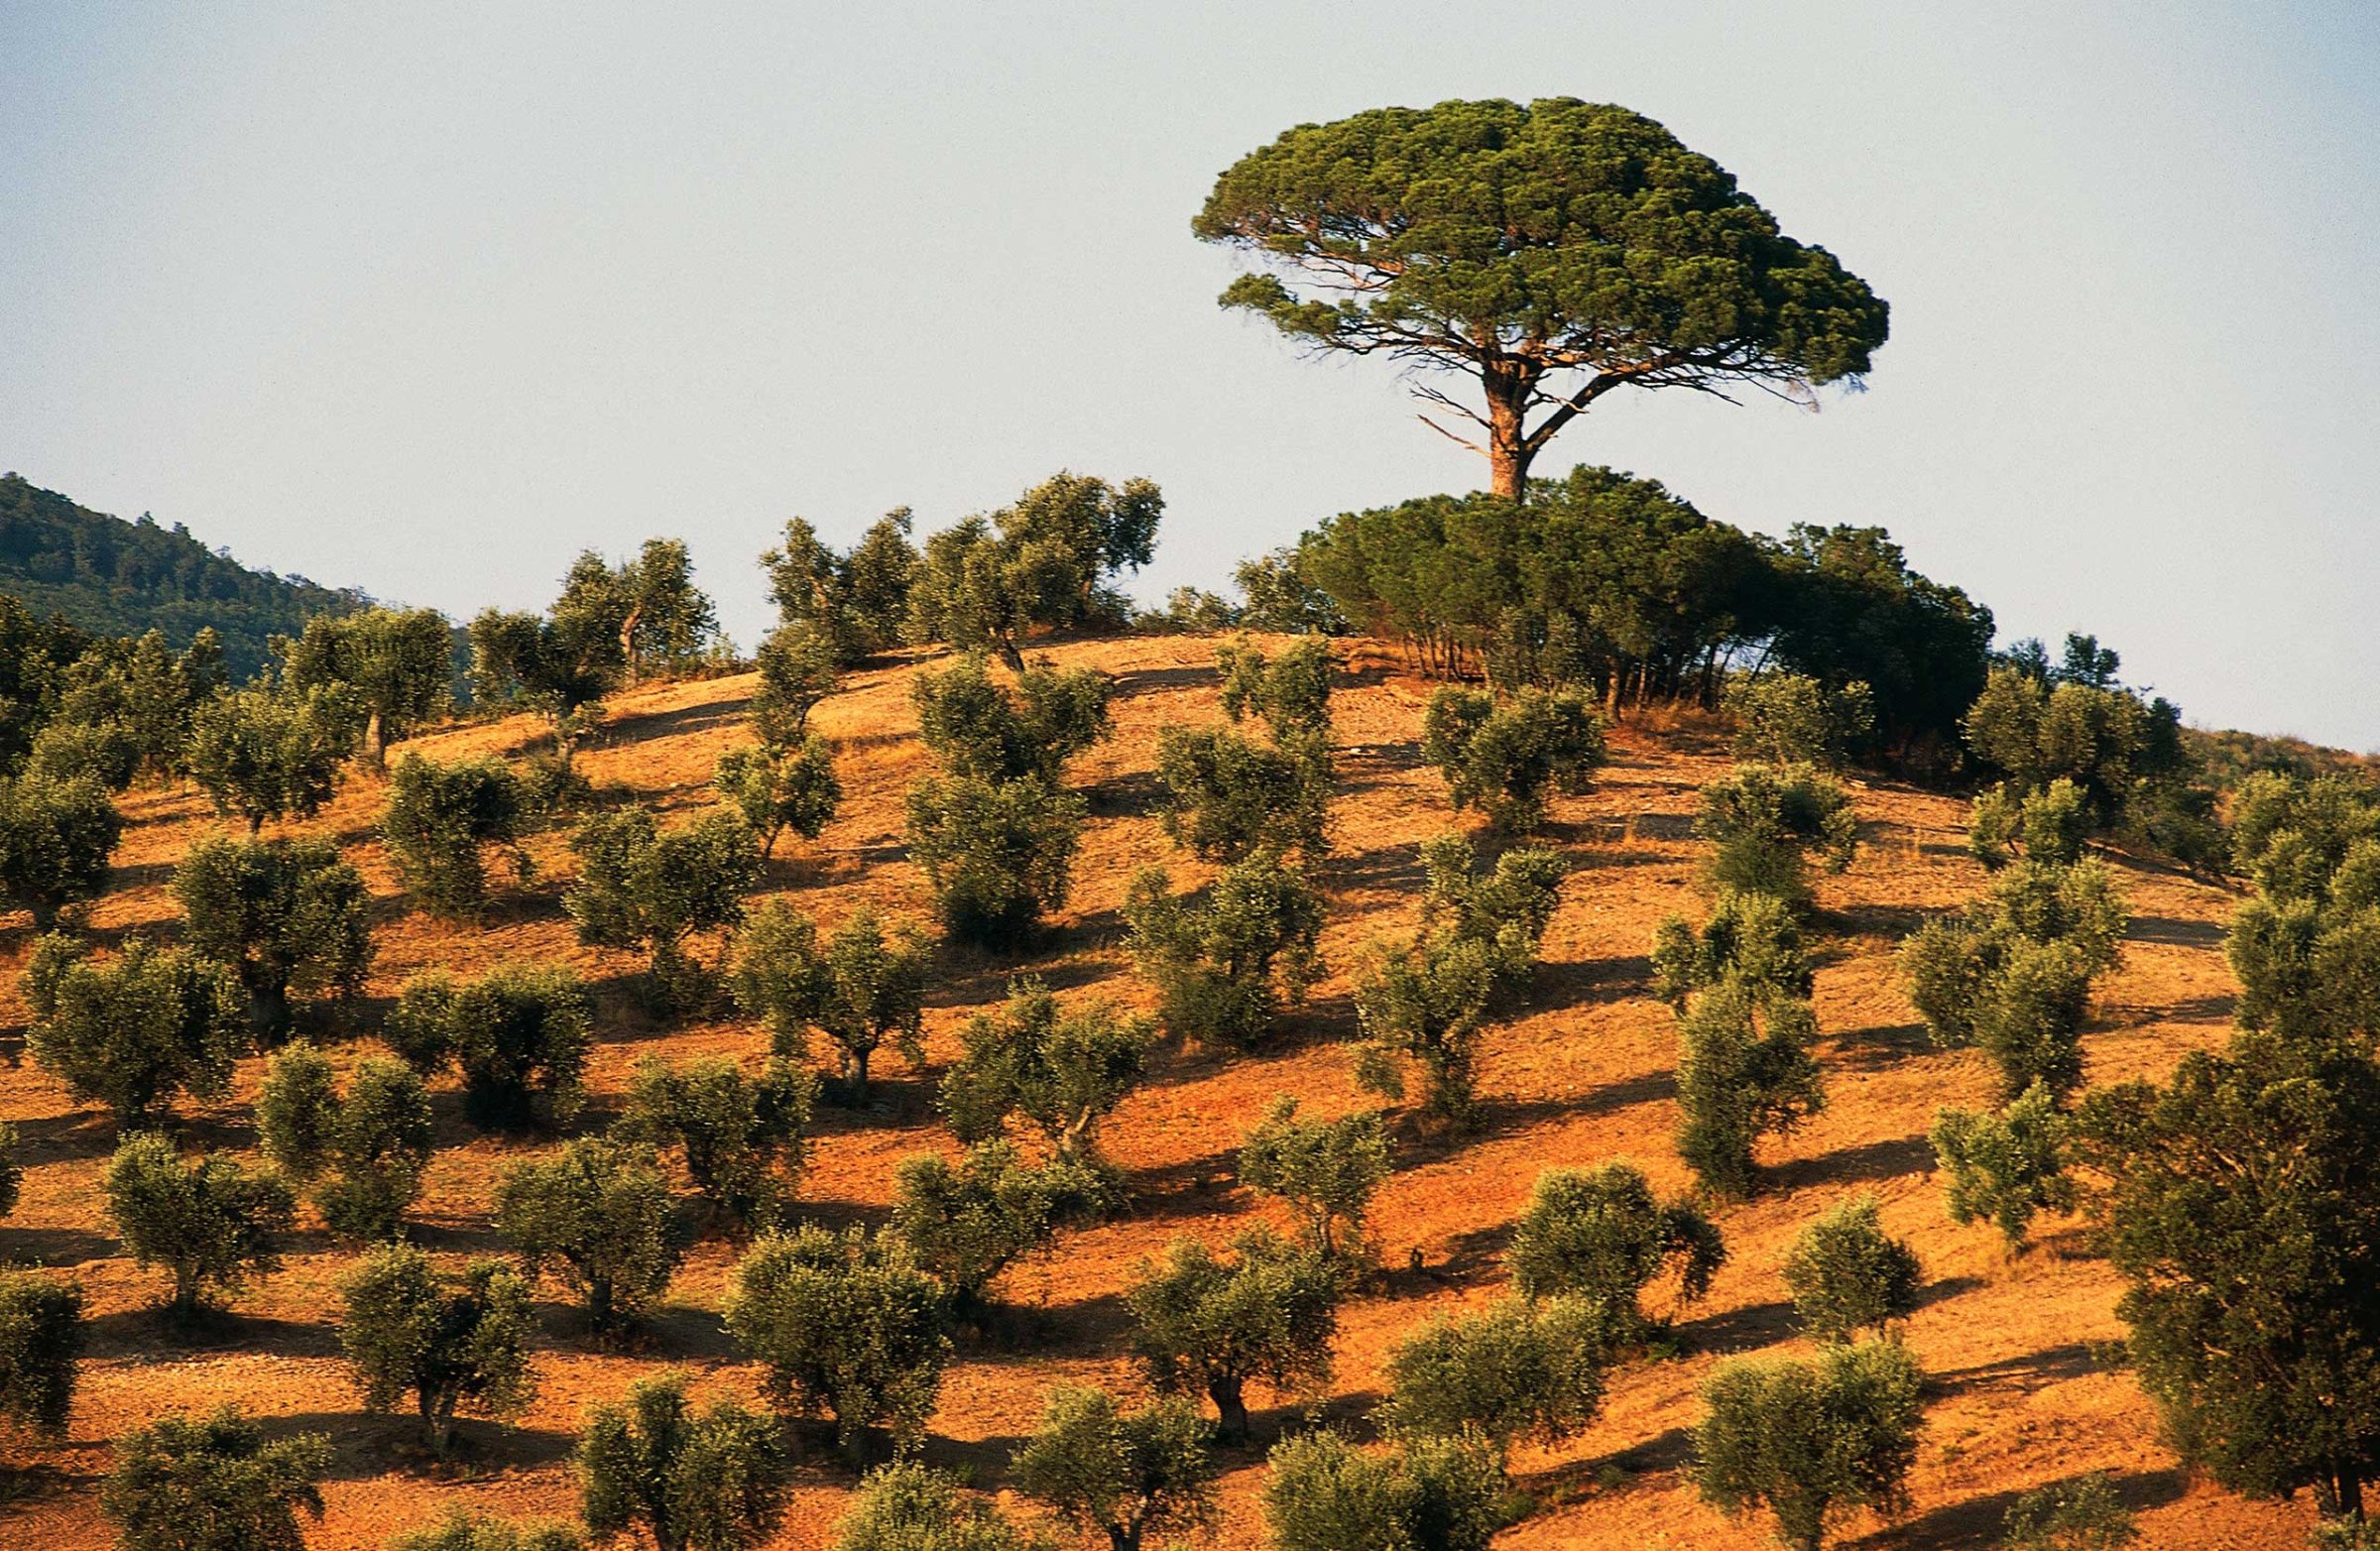 Olive trees in Tuscany, Italy.